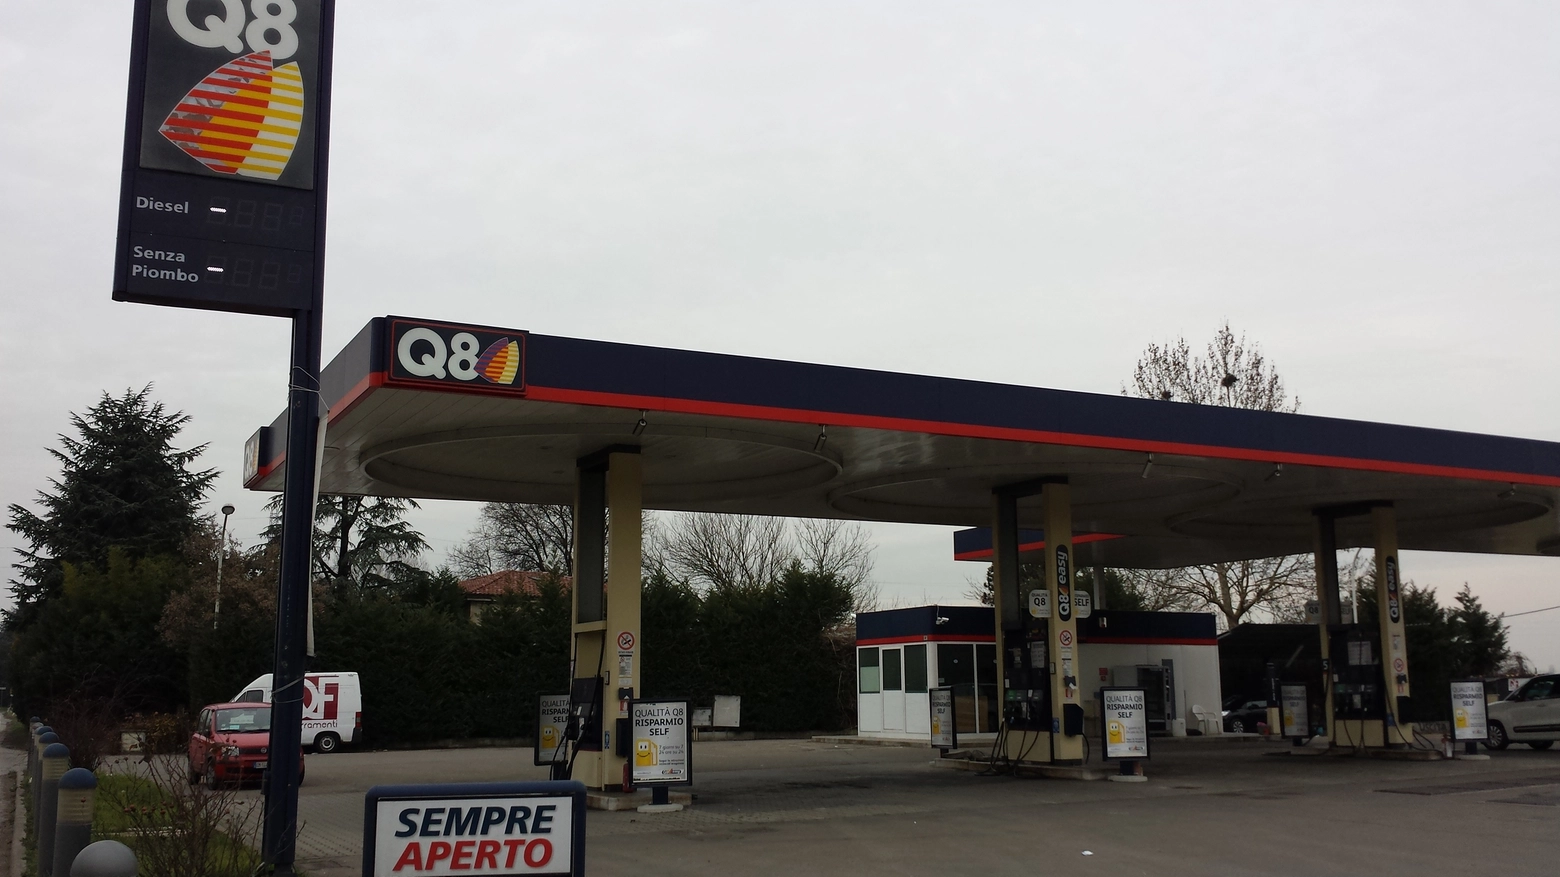 Il distributore di benzina Q8 preso d'assalto (Foto Saracino)